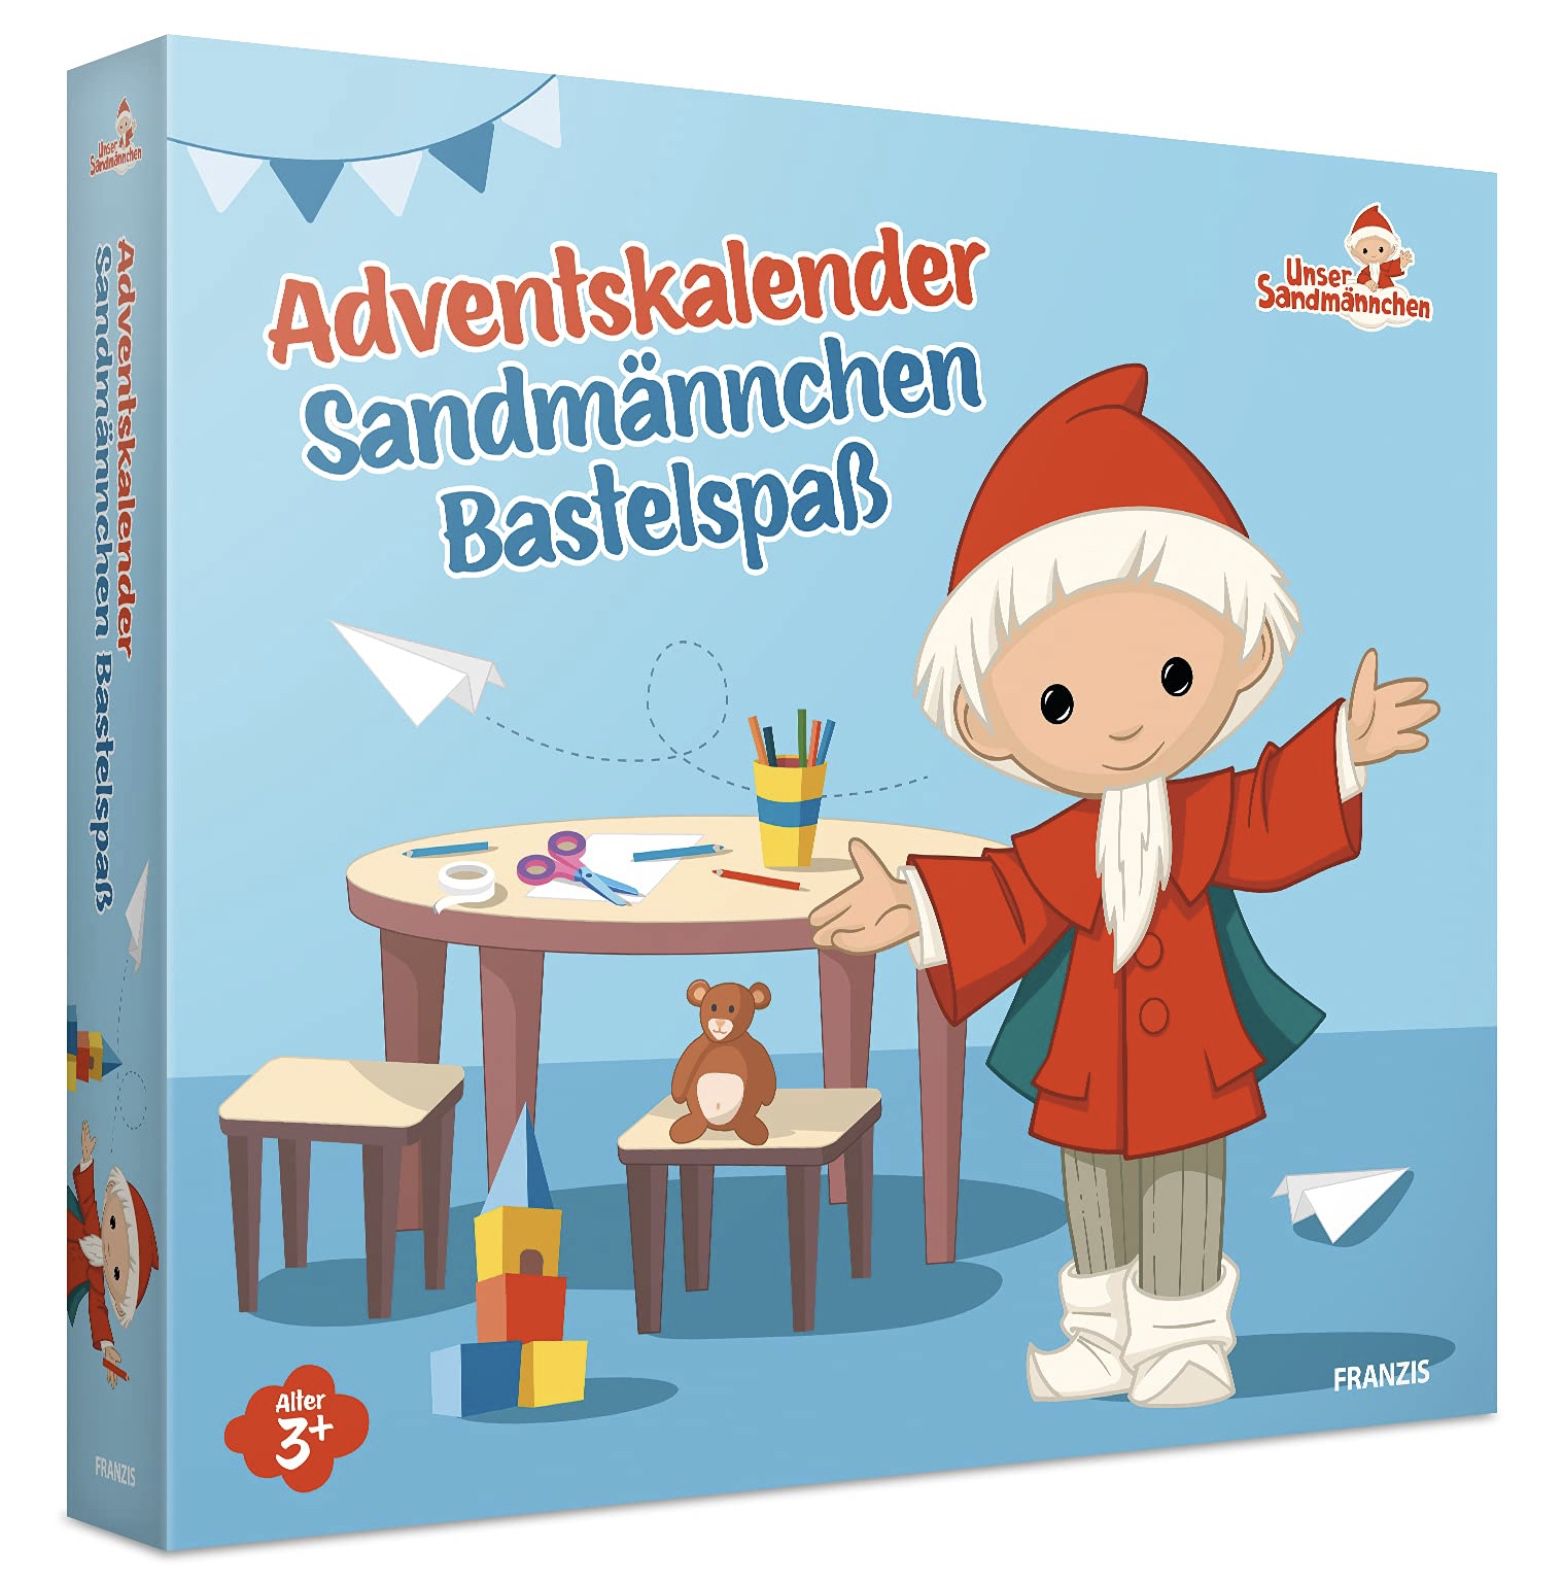 Franzis Sandmännchen Adventskalender mit Bastel Sets für 4,81€ (statt 21€)   Prime